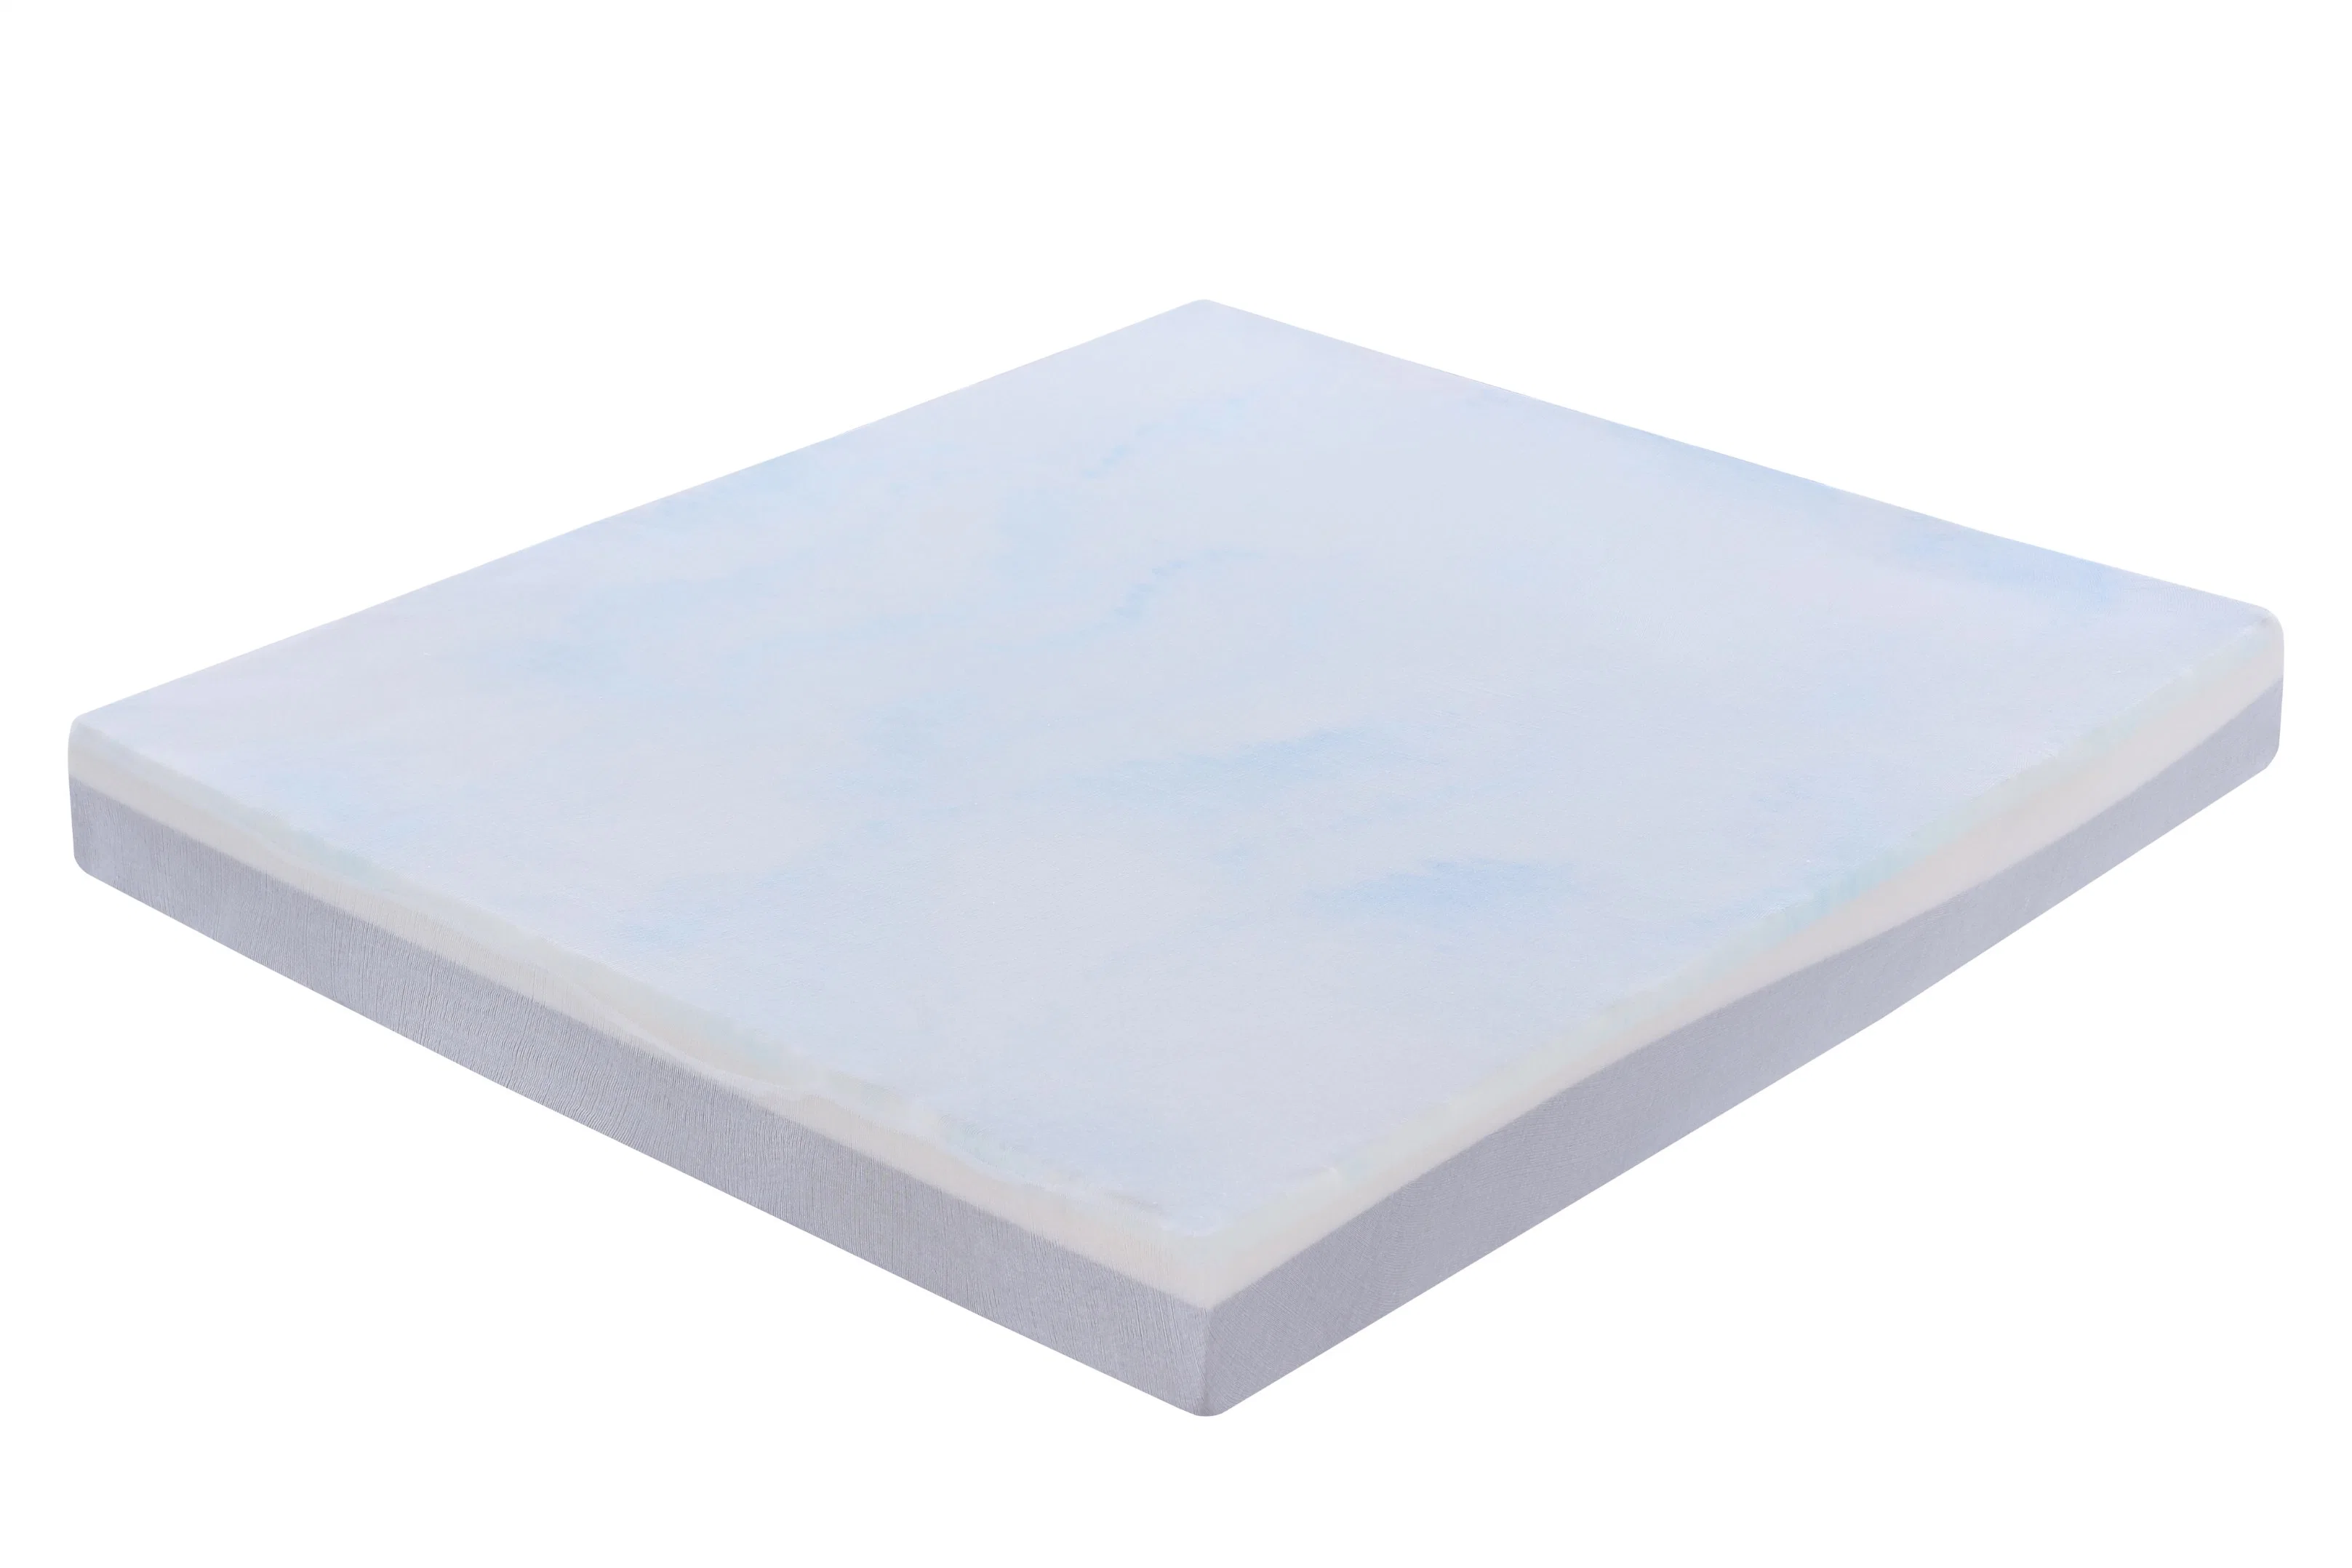 قماش حرير ثلج مقاوم للبكتيريا ضد الحشرات كول وواقي حرير قابل للإزالة غطاء قماش ناعم قابل للغسل، يمكن حماقة فراش MATV Latex Memory لفة